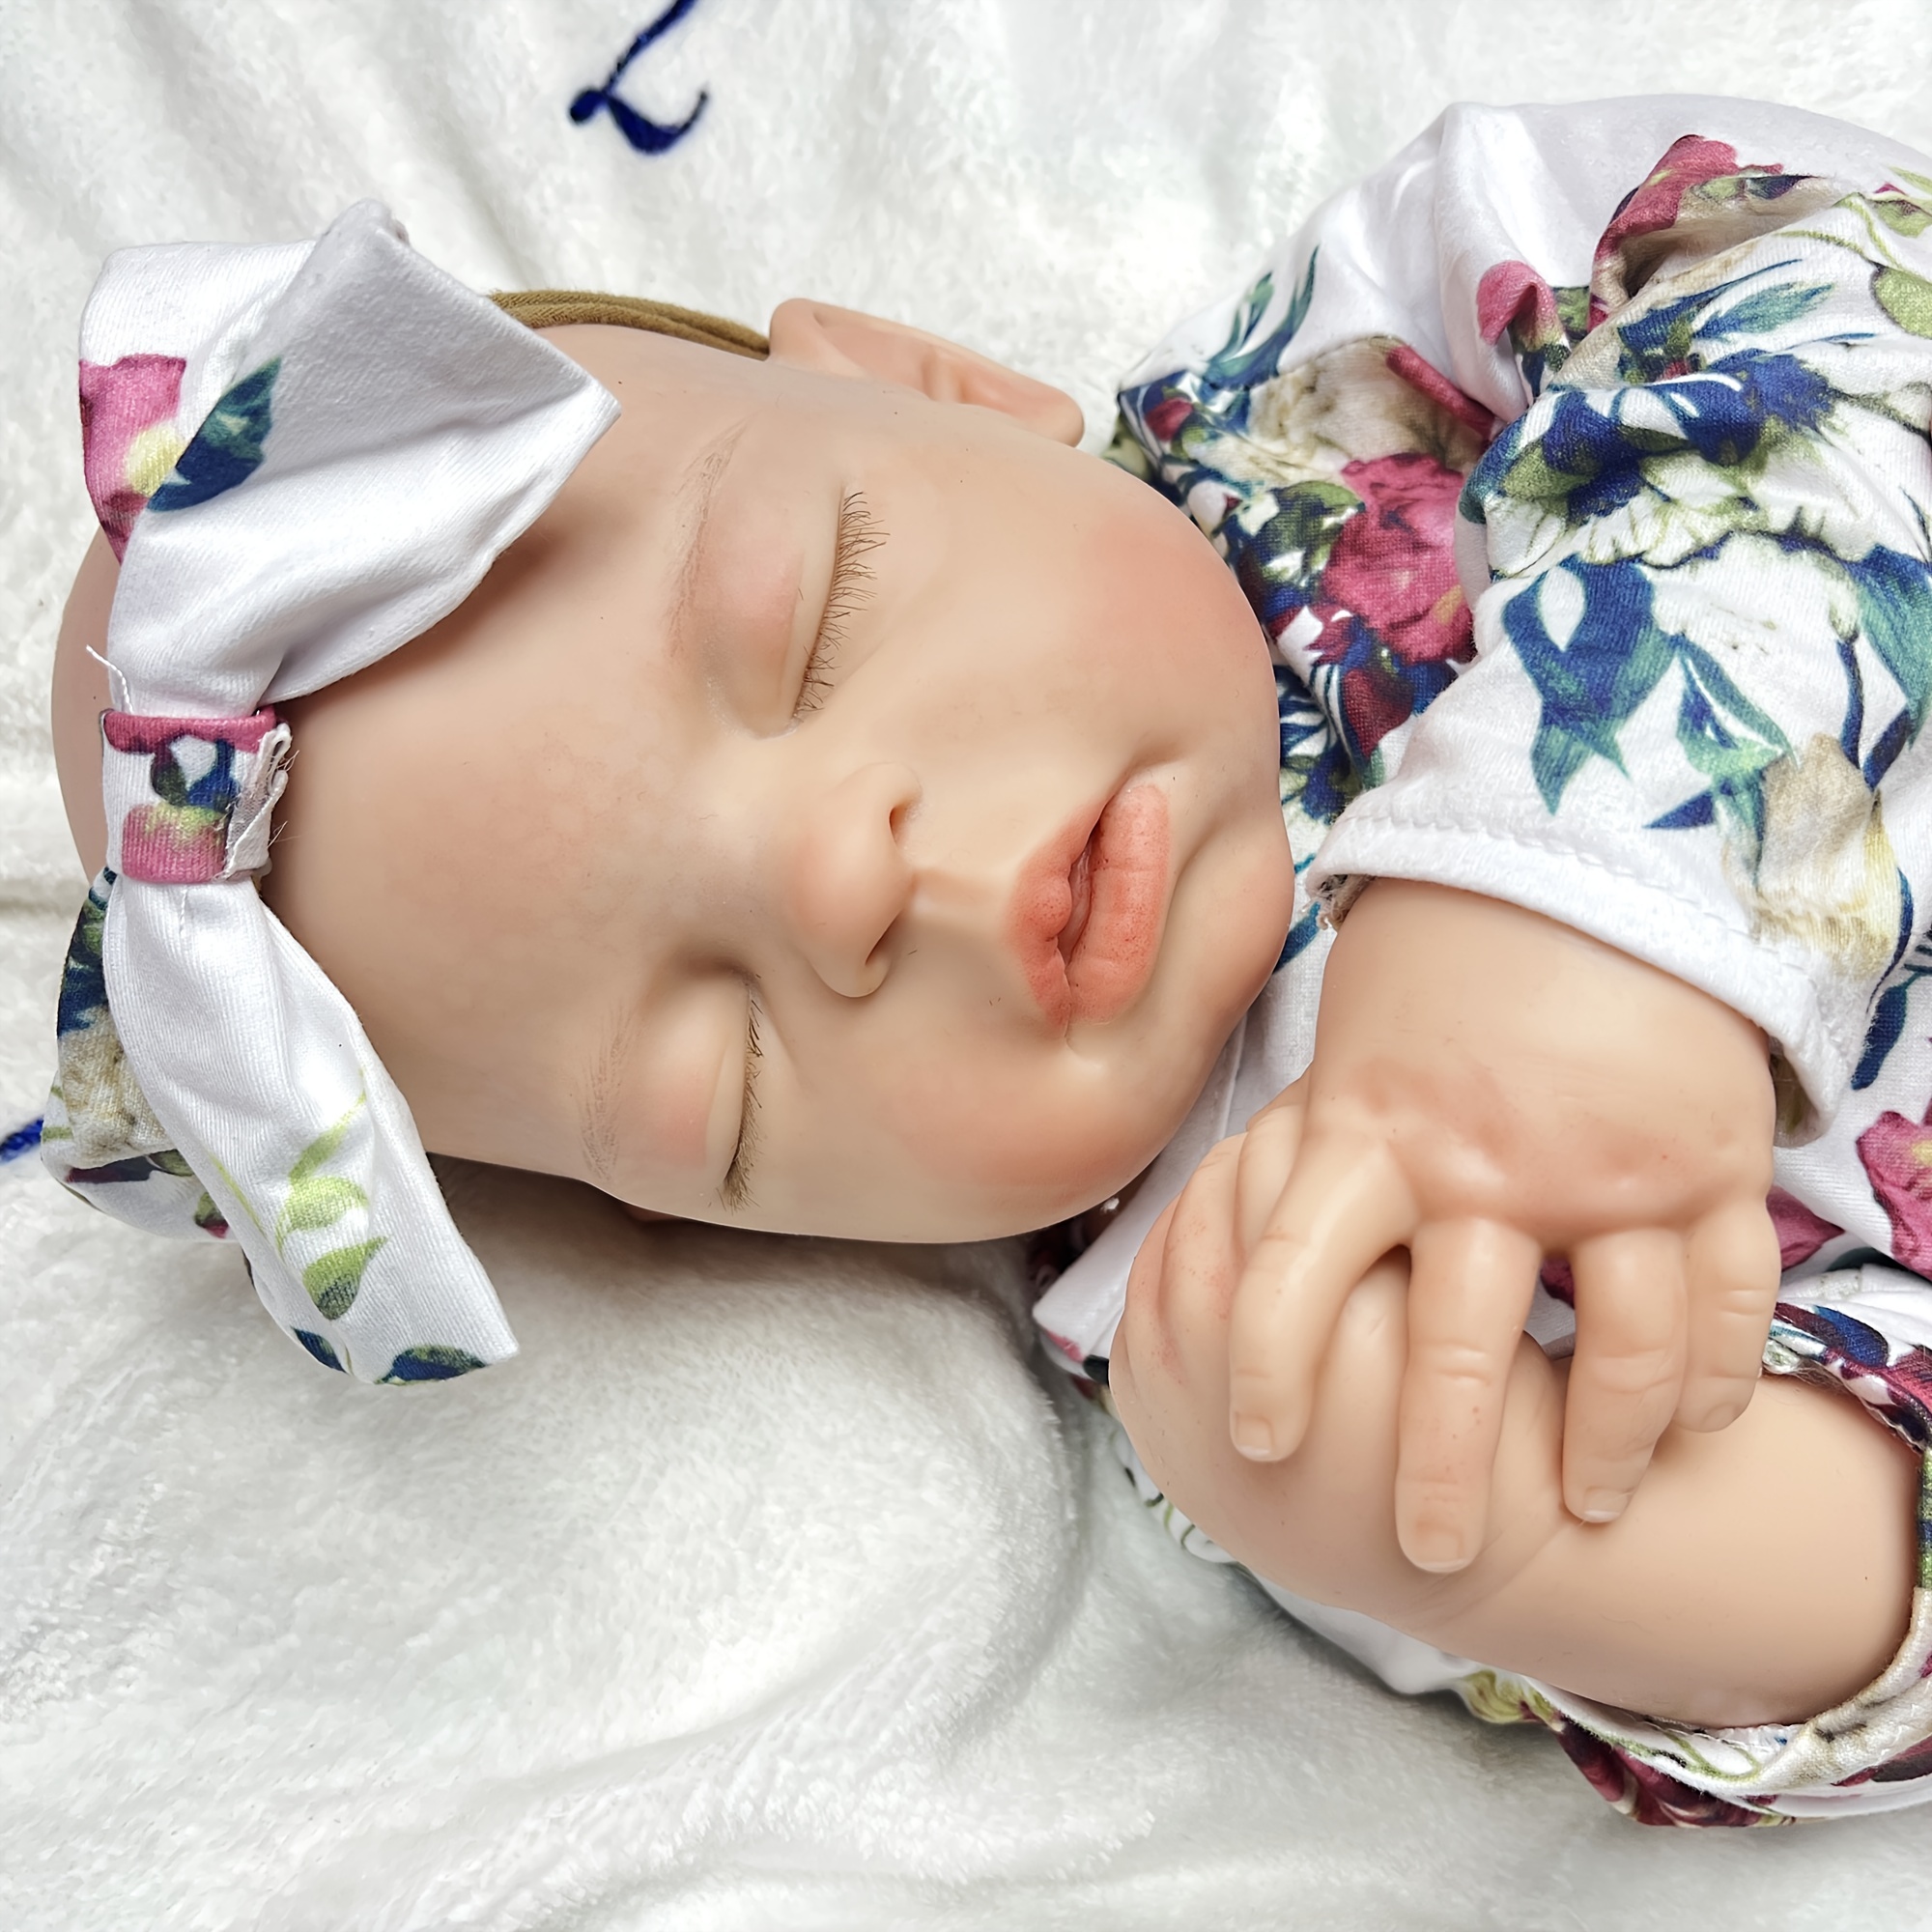 55cm Full Body Silicone Reborn Girl Baby Doll Toys Bebe Boneca